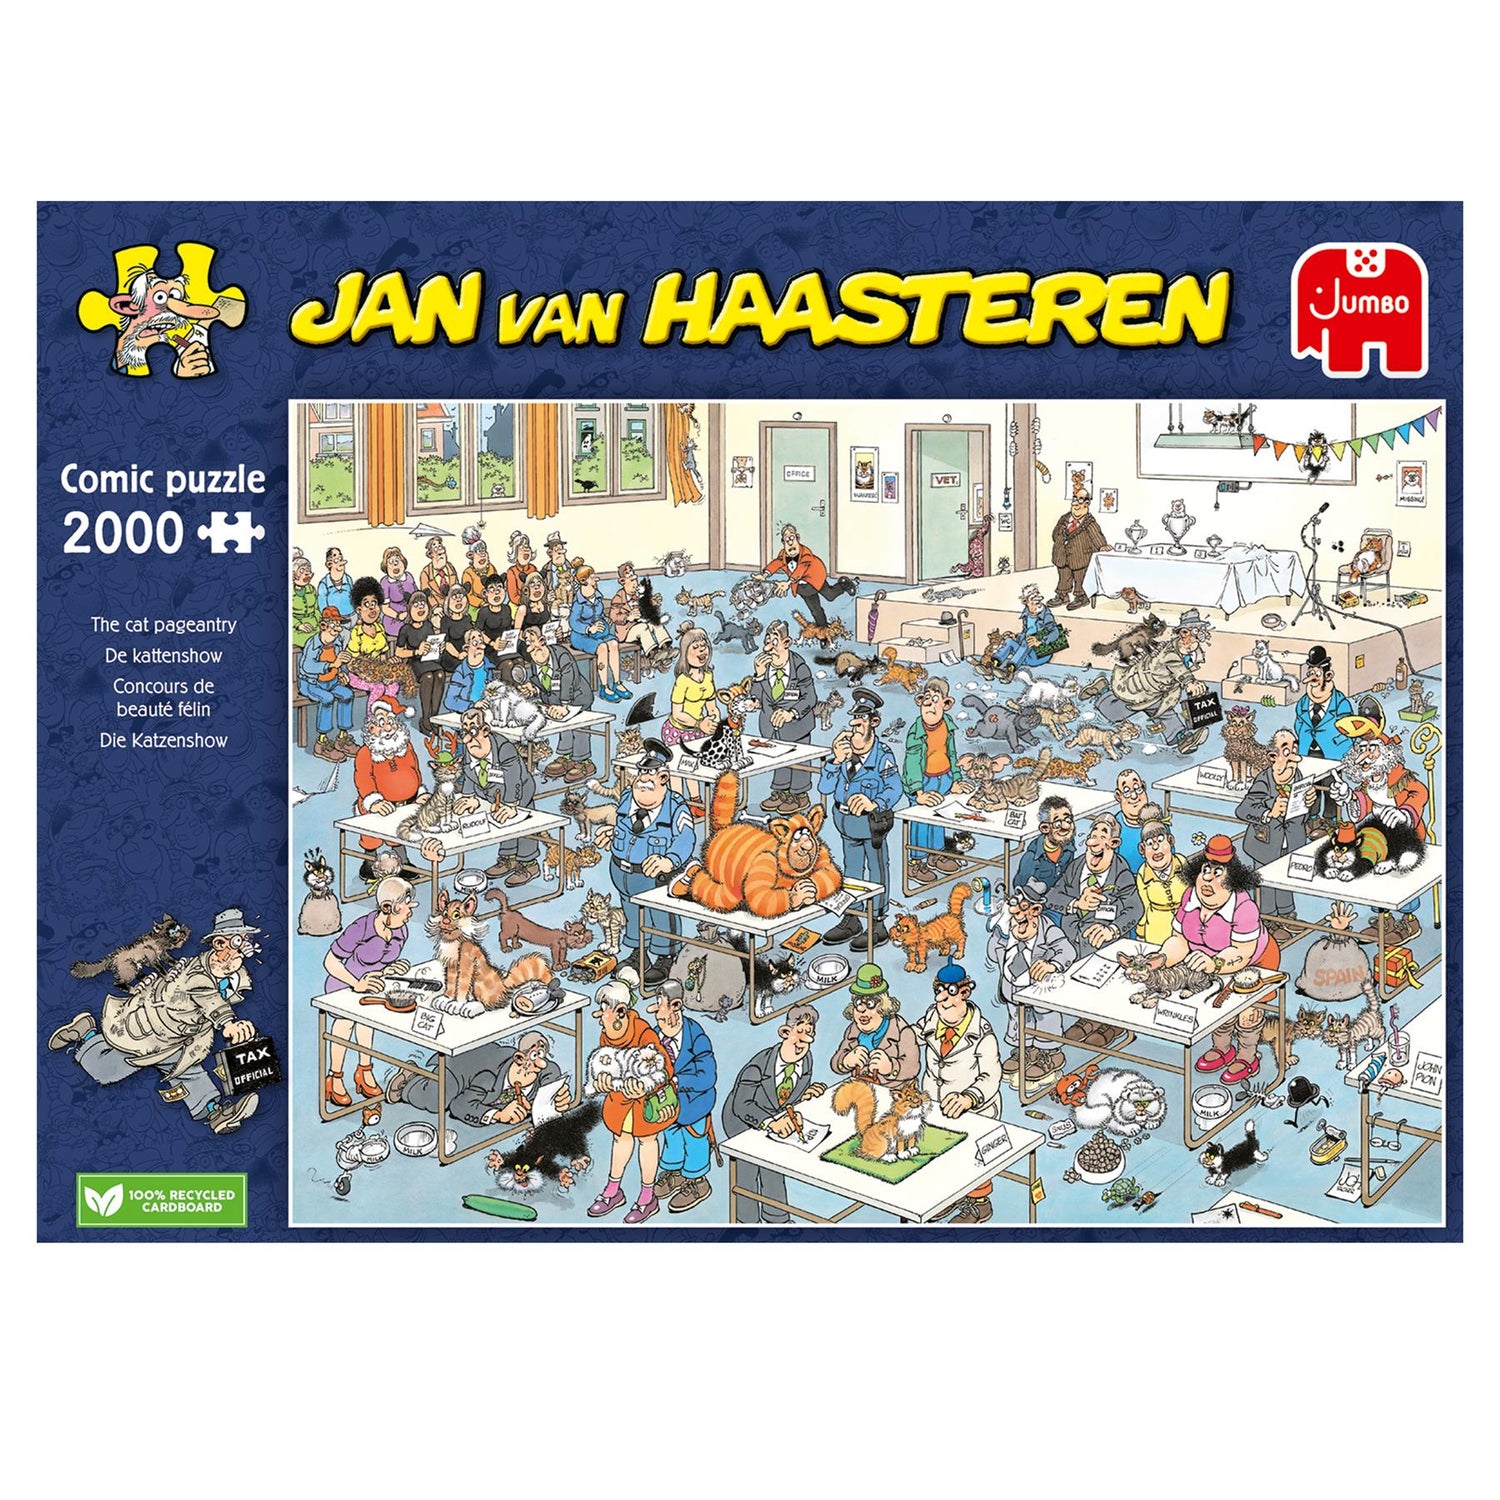 1500 Piece Jigsaw Puzzles